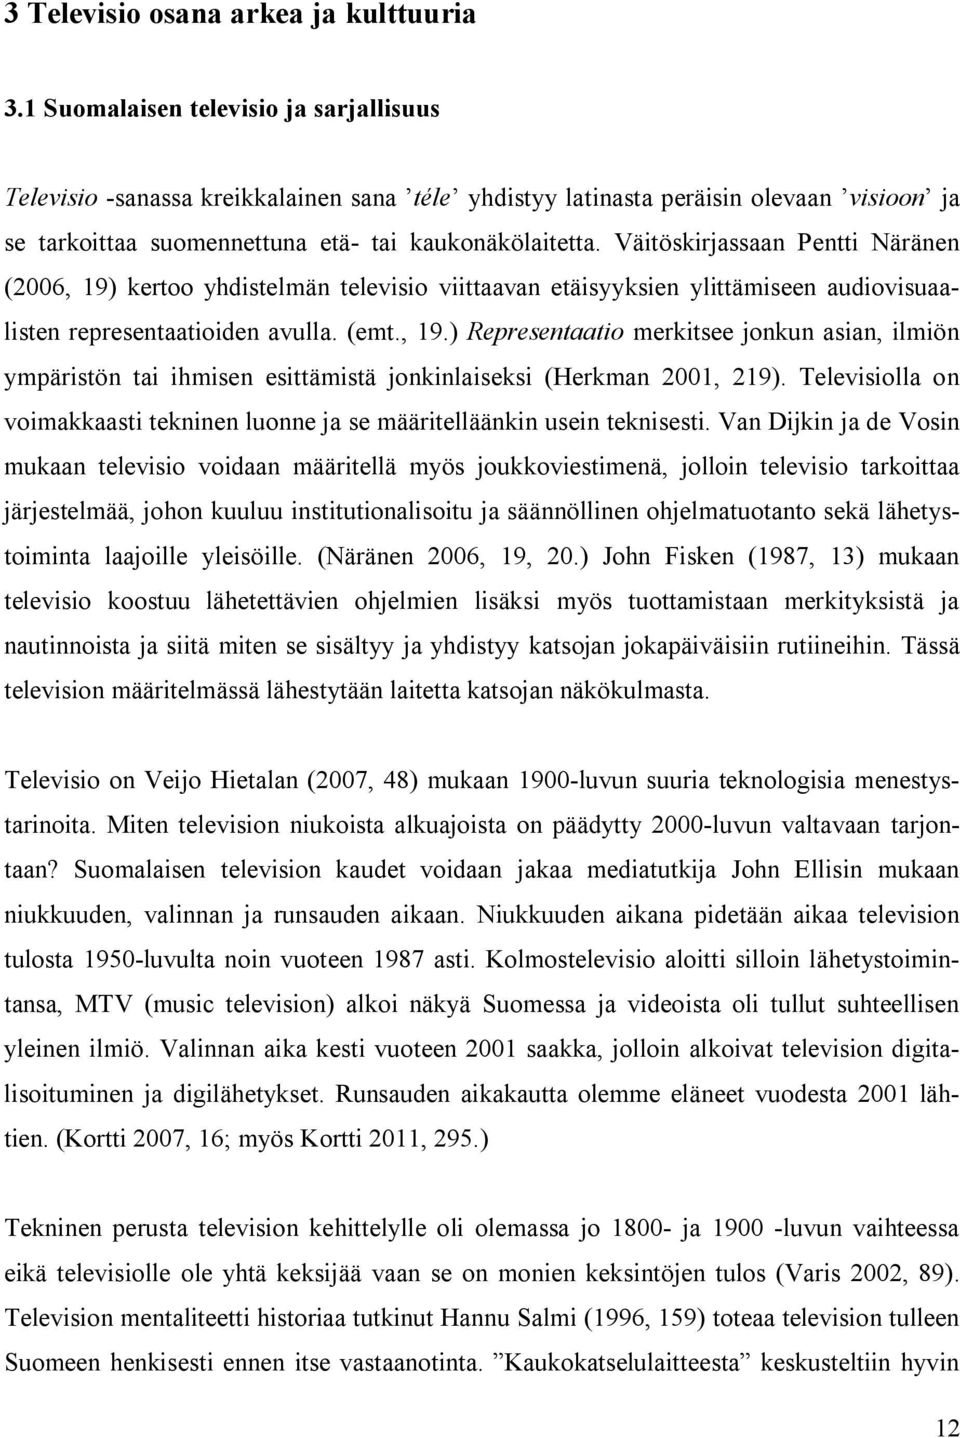 Väitöskirjassaan Pentti Näränen (2006, 19) kertoo yhdistelmän televisio viittaavan etäisyyksien ylittämiseen audiovisuaalisten representaatioiden avulla. (emt., 19.) Representaatio merkitsee jonkun asian, ilmiön ympäristön tai ihmisen esittämistä jonkinlaiseksi (Herkman 2001, 219).